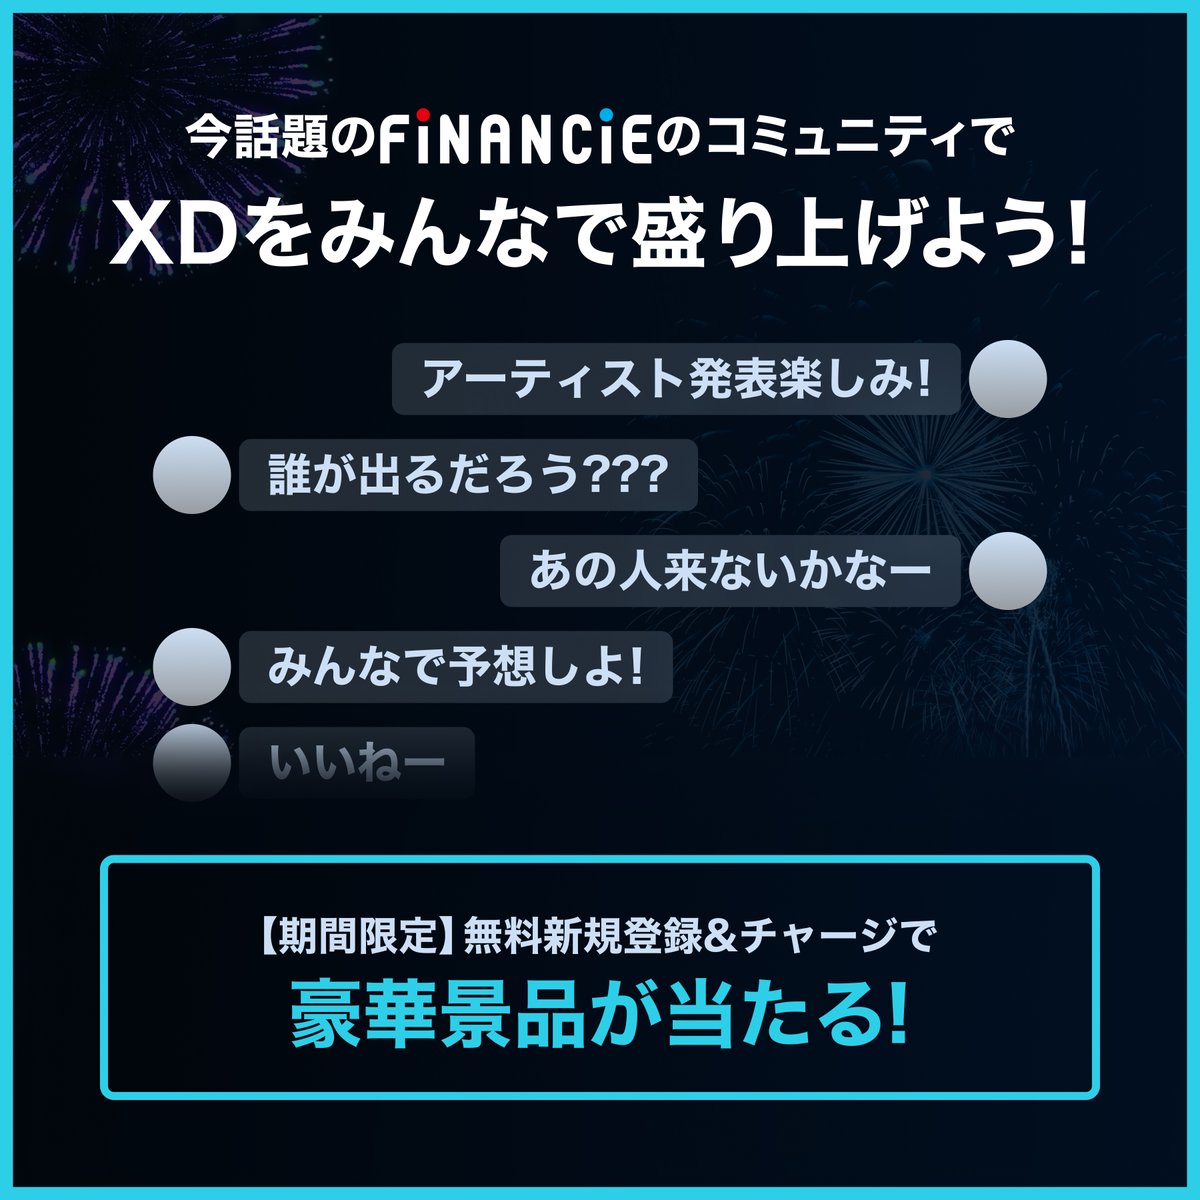 ／
XD×FiNANCiE
コミュニティ開設のお知らせ
＼
『XD』は本日よりフィナンシェコミュニティをオープンします！

🔗コミュニティページはこちら
financie.jp/users/XD-Fes

#XD
#FiNANCiE